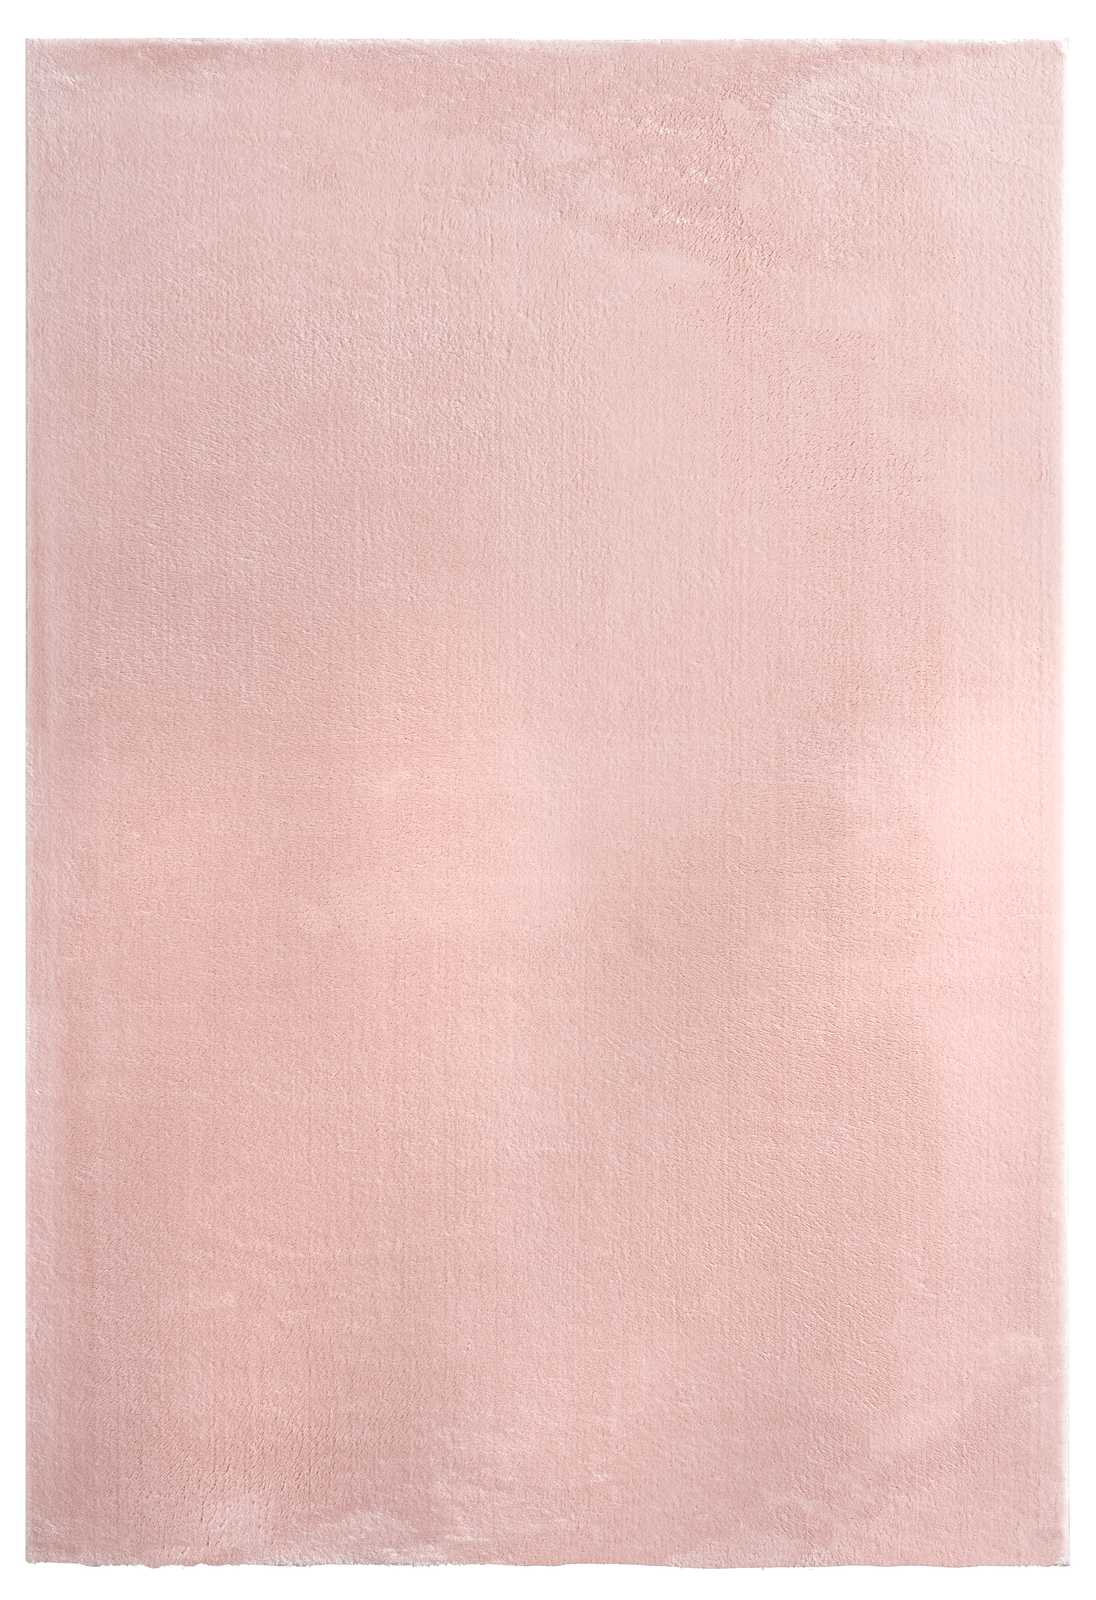             Fijnpolig tapijt in roze - 170 x 120 cm
        